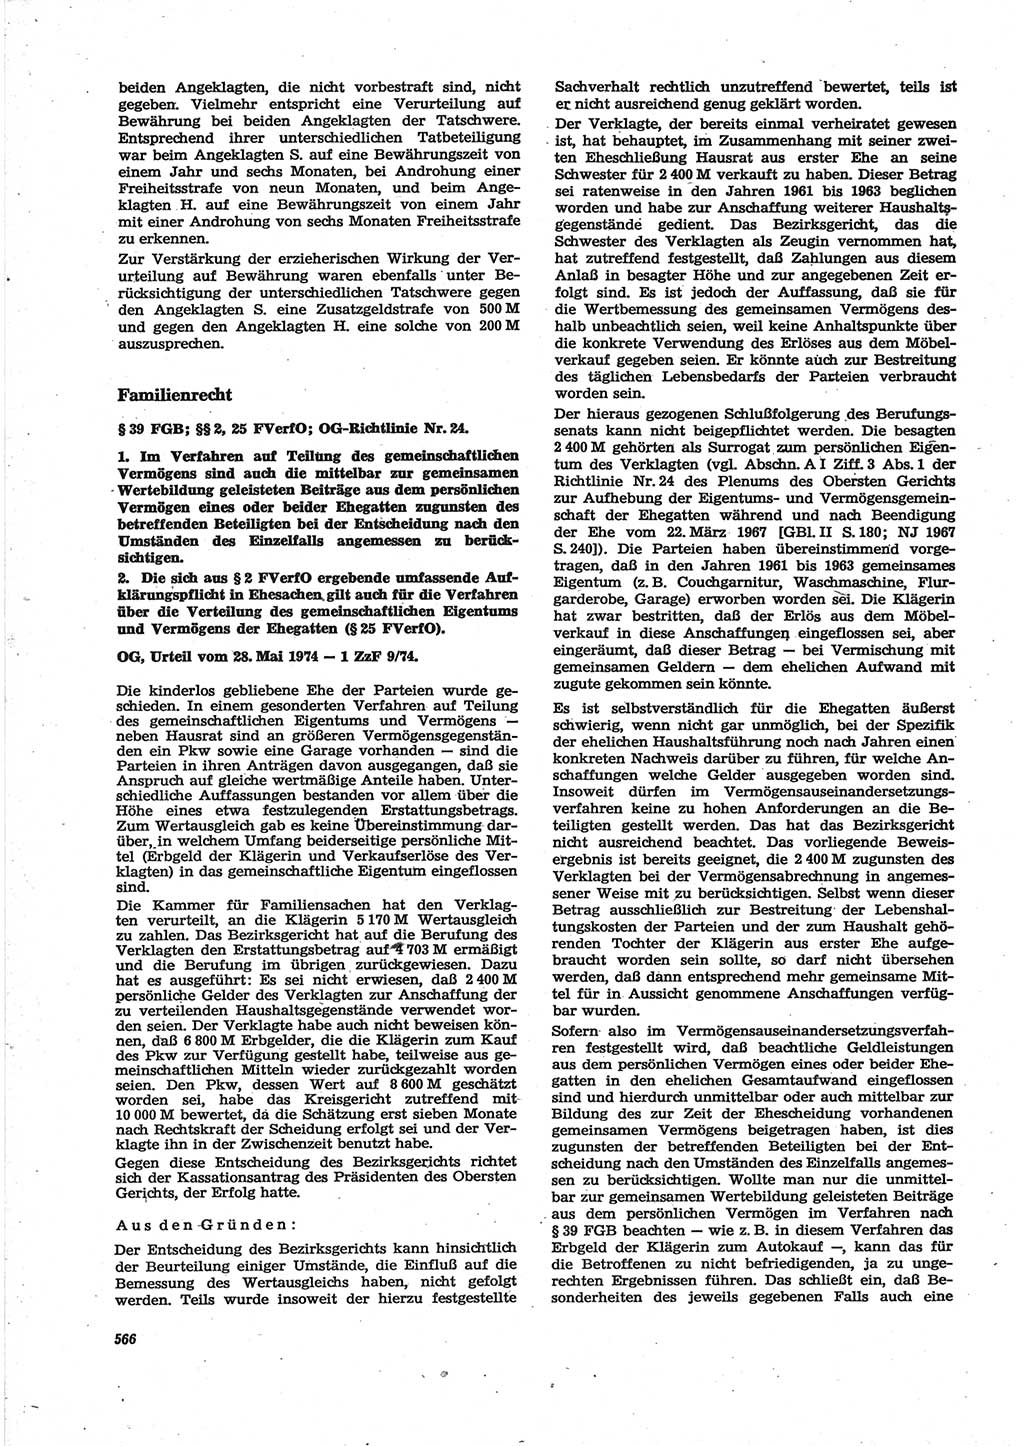 Neue Justiz (NJ), Zeitschrift für Recht und Rechtswissenschaft [Deutsche Demokratische Republik (DDR)], 28. Jahrgang 1974, Seite 566 (NJ DDR 1974, S. 566)